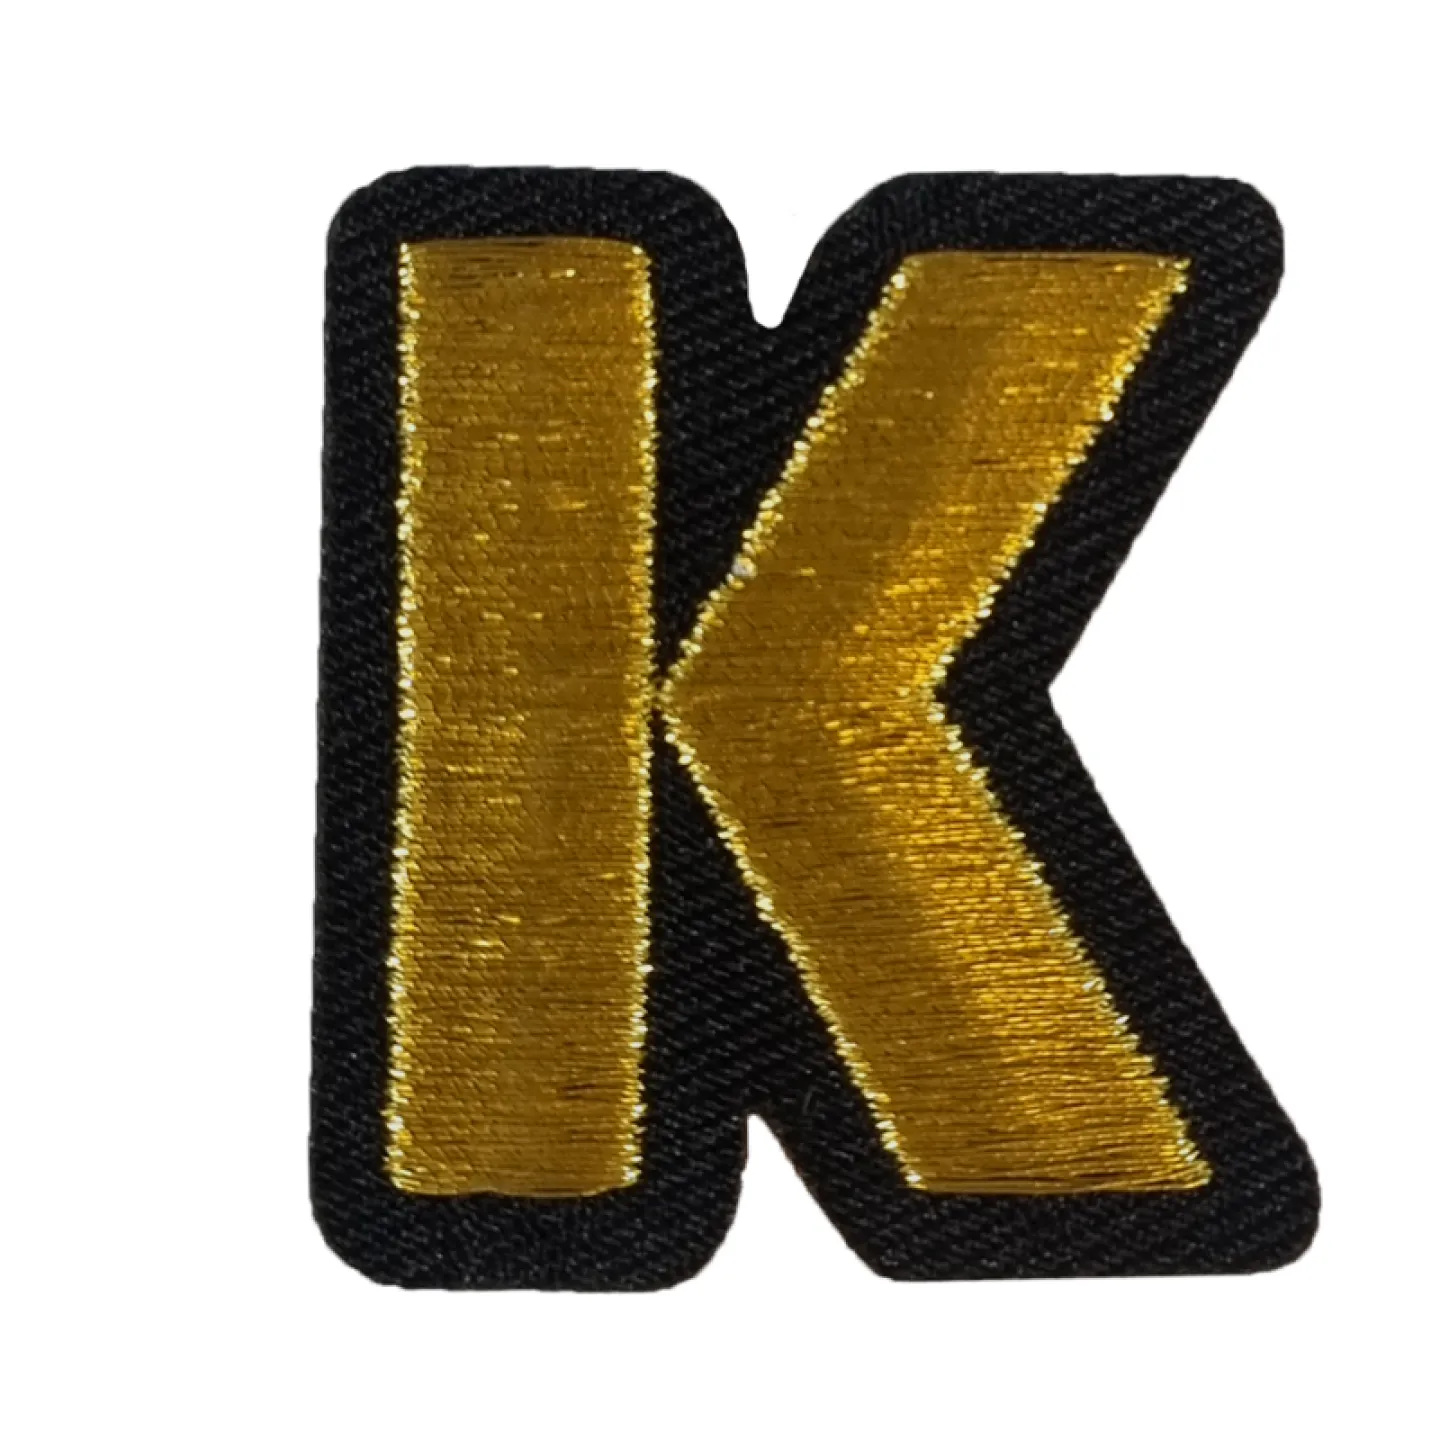 Kielegat embleem Gouden letter K.